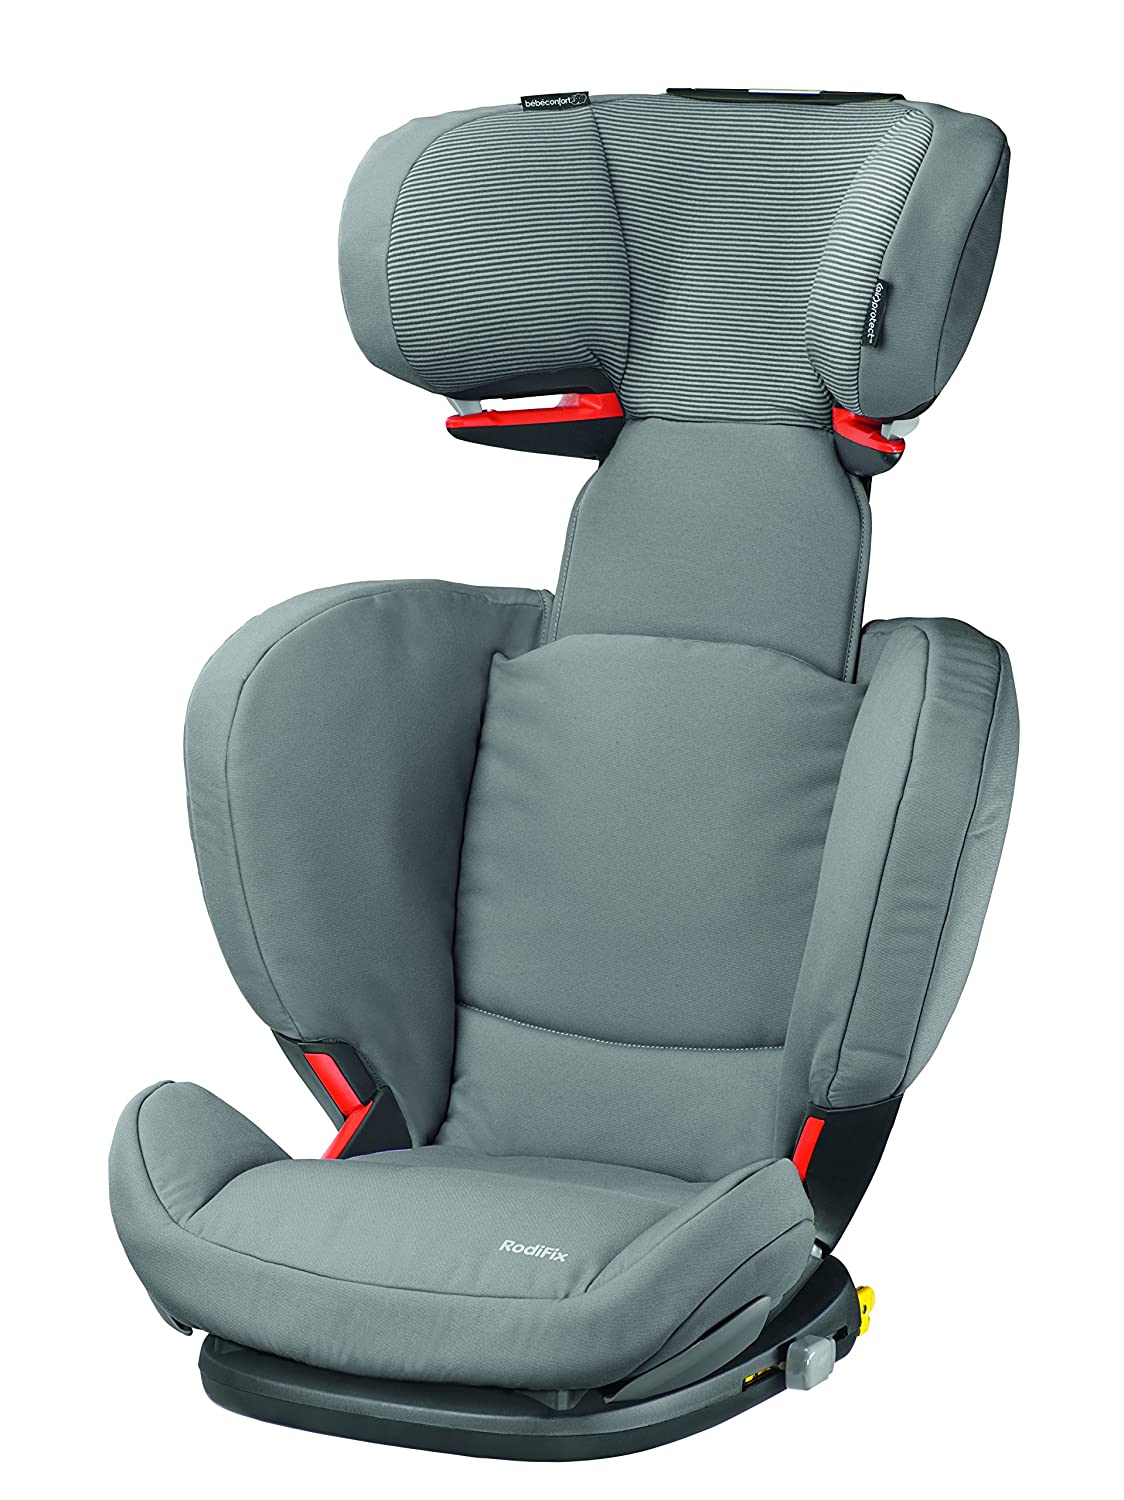 BEBE CONFORT Bébé Confort Rodifix Car Seat Group 2/3 Brown 2015 Collection